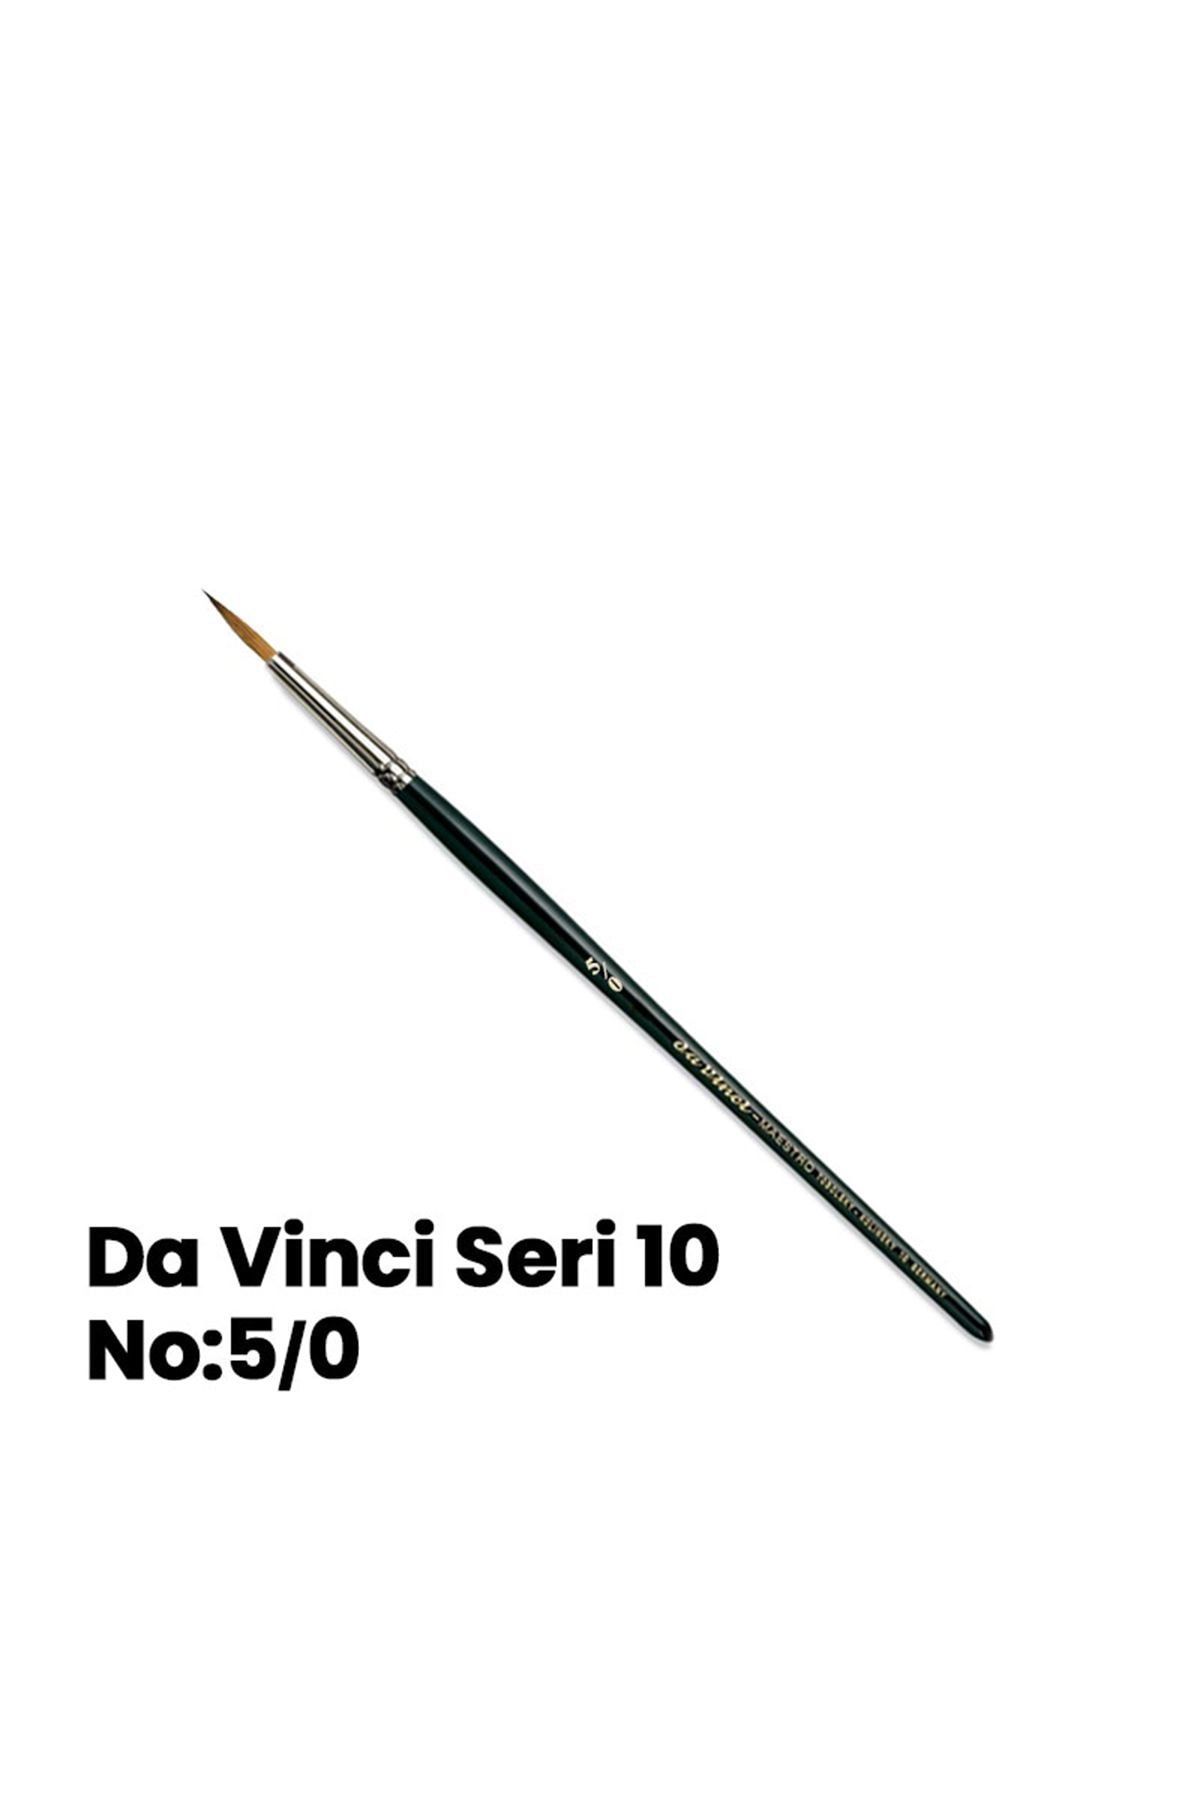 Da Vinci Seri 10 Tezhip Fırçası No 5/0